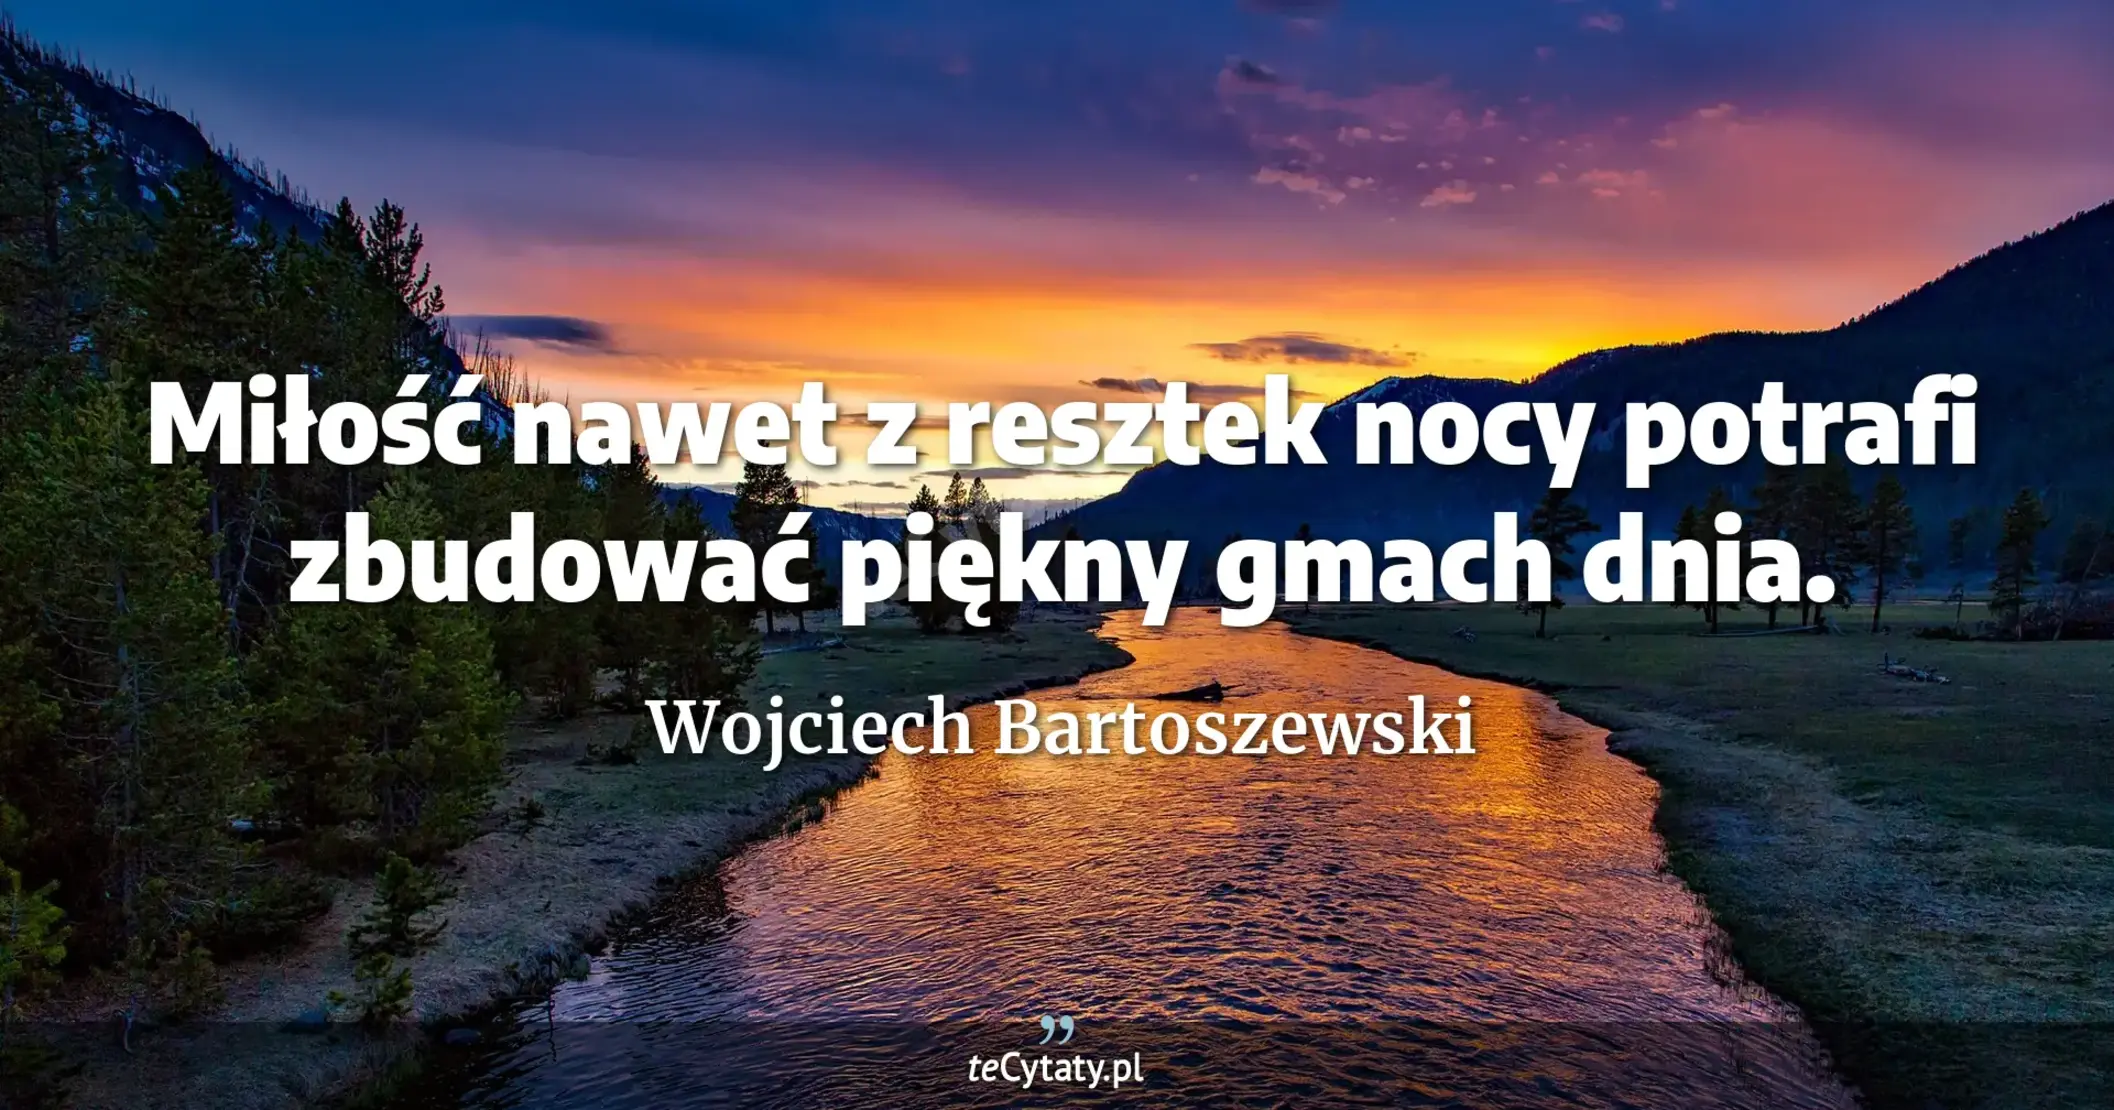 Miłość nawet z resztek nocy potrafi zbudować piękny gmach dnia. - Wojciech Bartoszewski